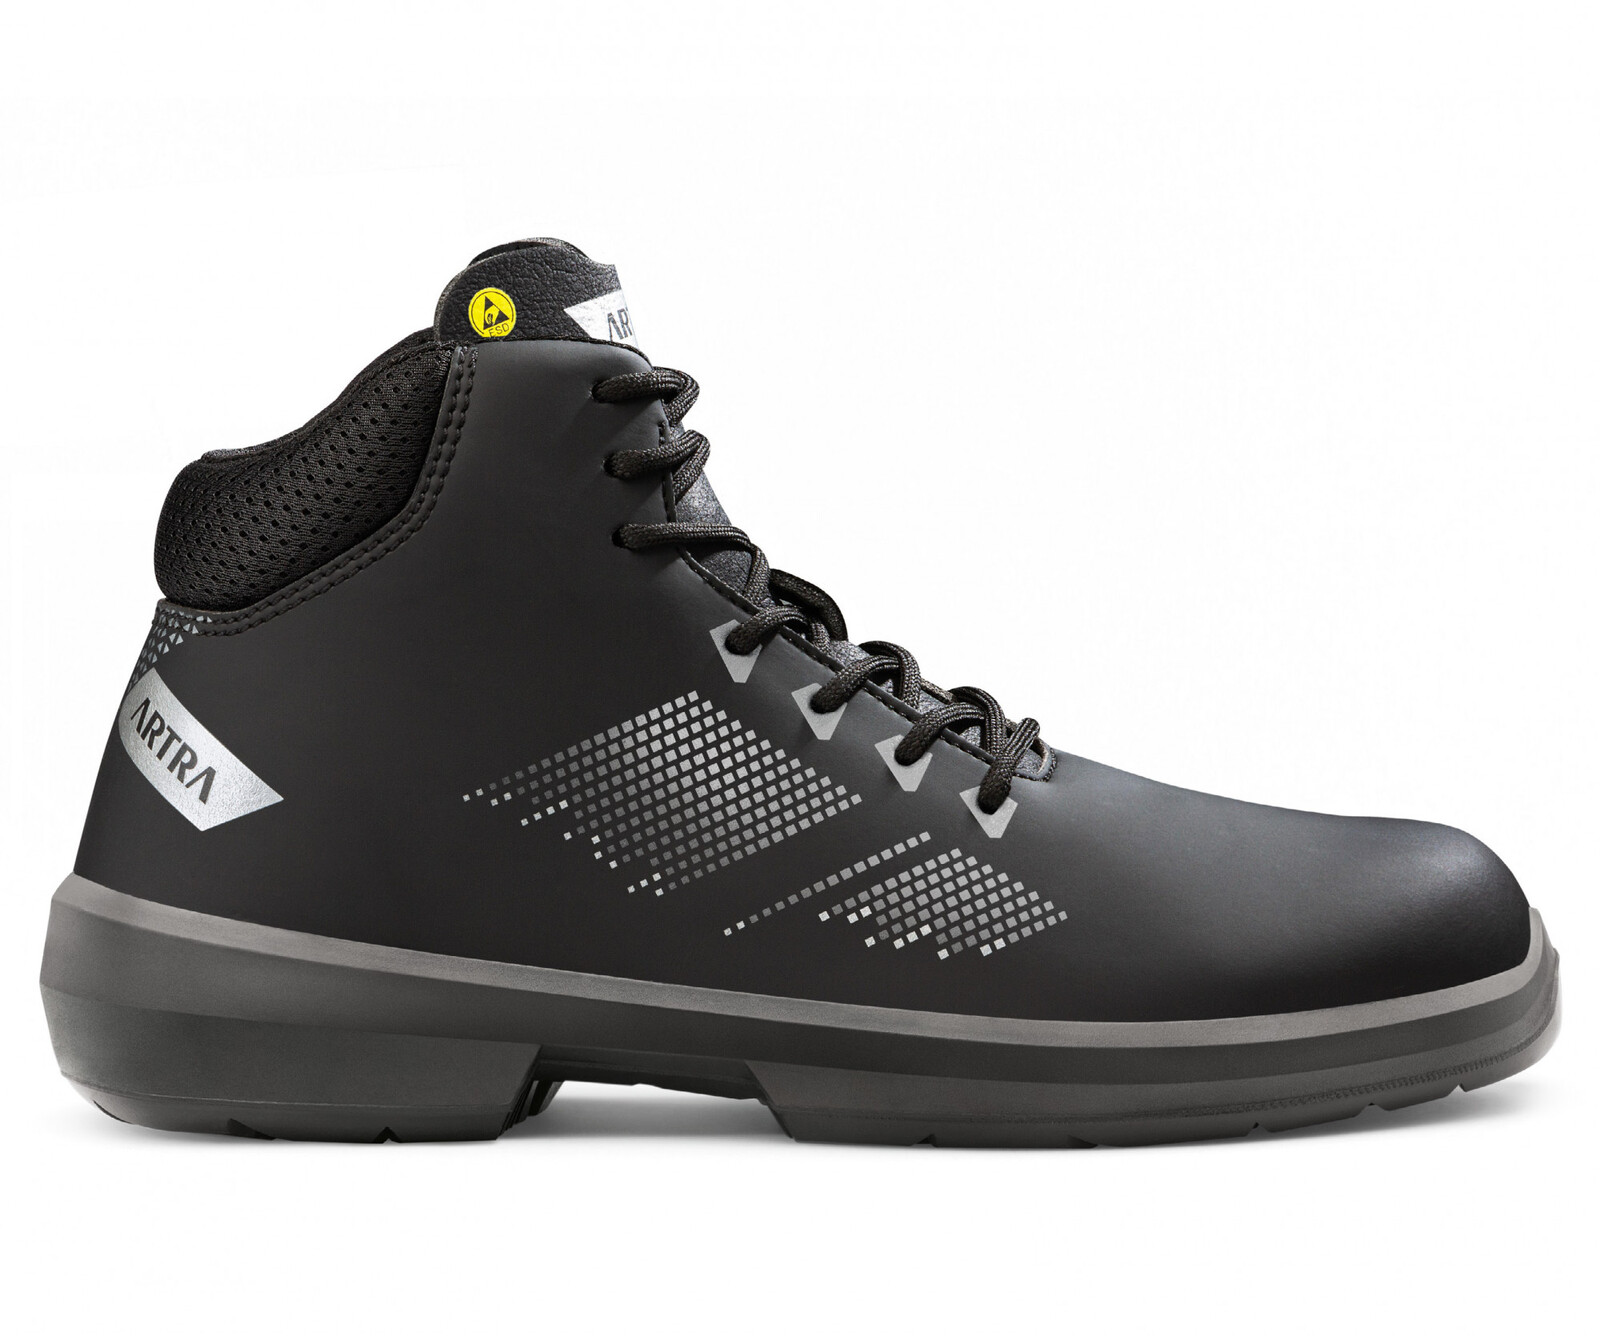 Bezpečnostná členková obuv Artra Arrival 855 676560 S3 SRC ESD MF - veľkosť: 39, farba: čierna/sivá